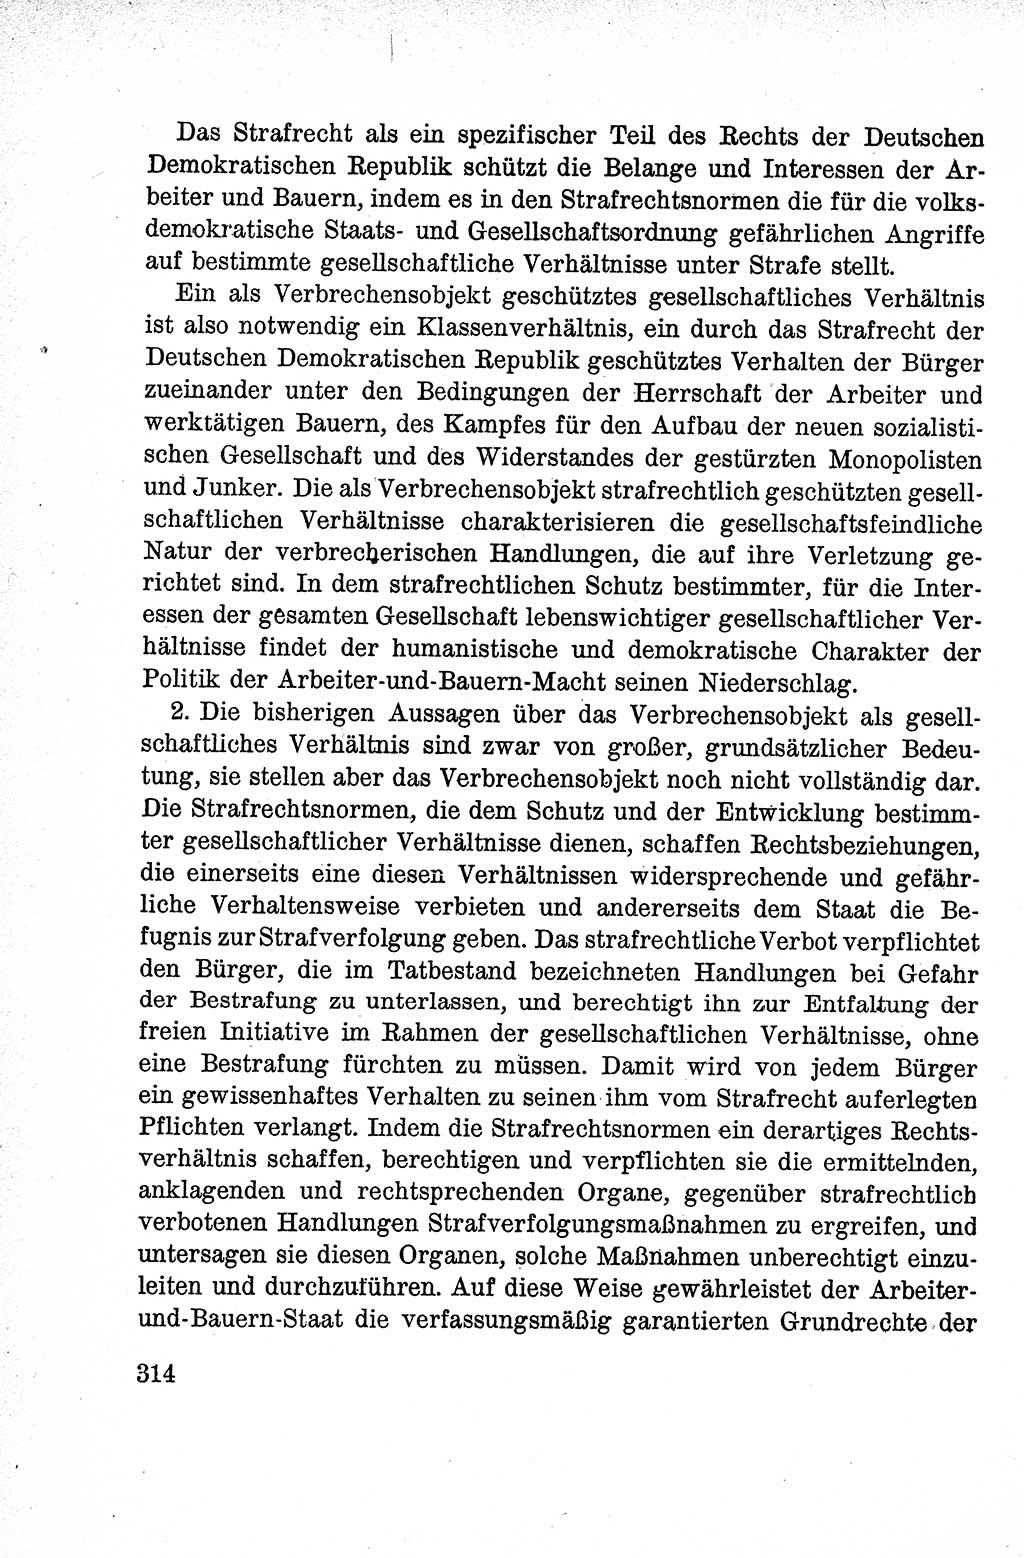 Lehrbuch des Strafrechts der Deutschen Demokratischen Republik (DDR), Allgemeiner Teil 1959, Seite 314 (Lb. Strafr. DDR AT 1959, S. 314)